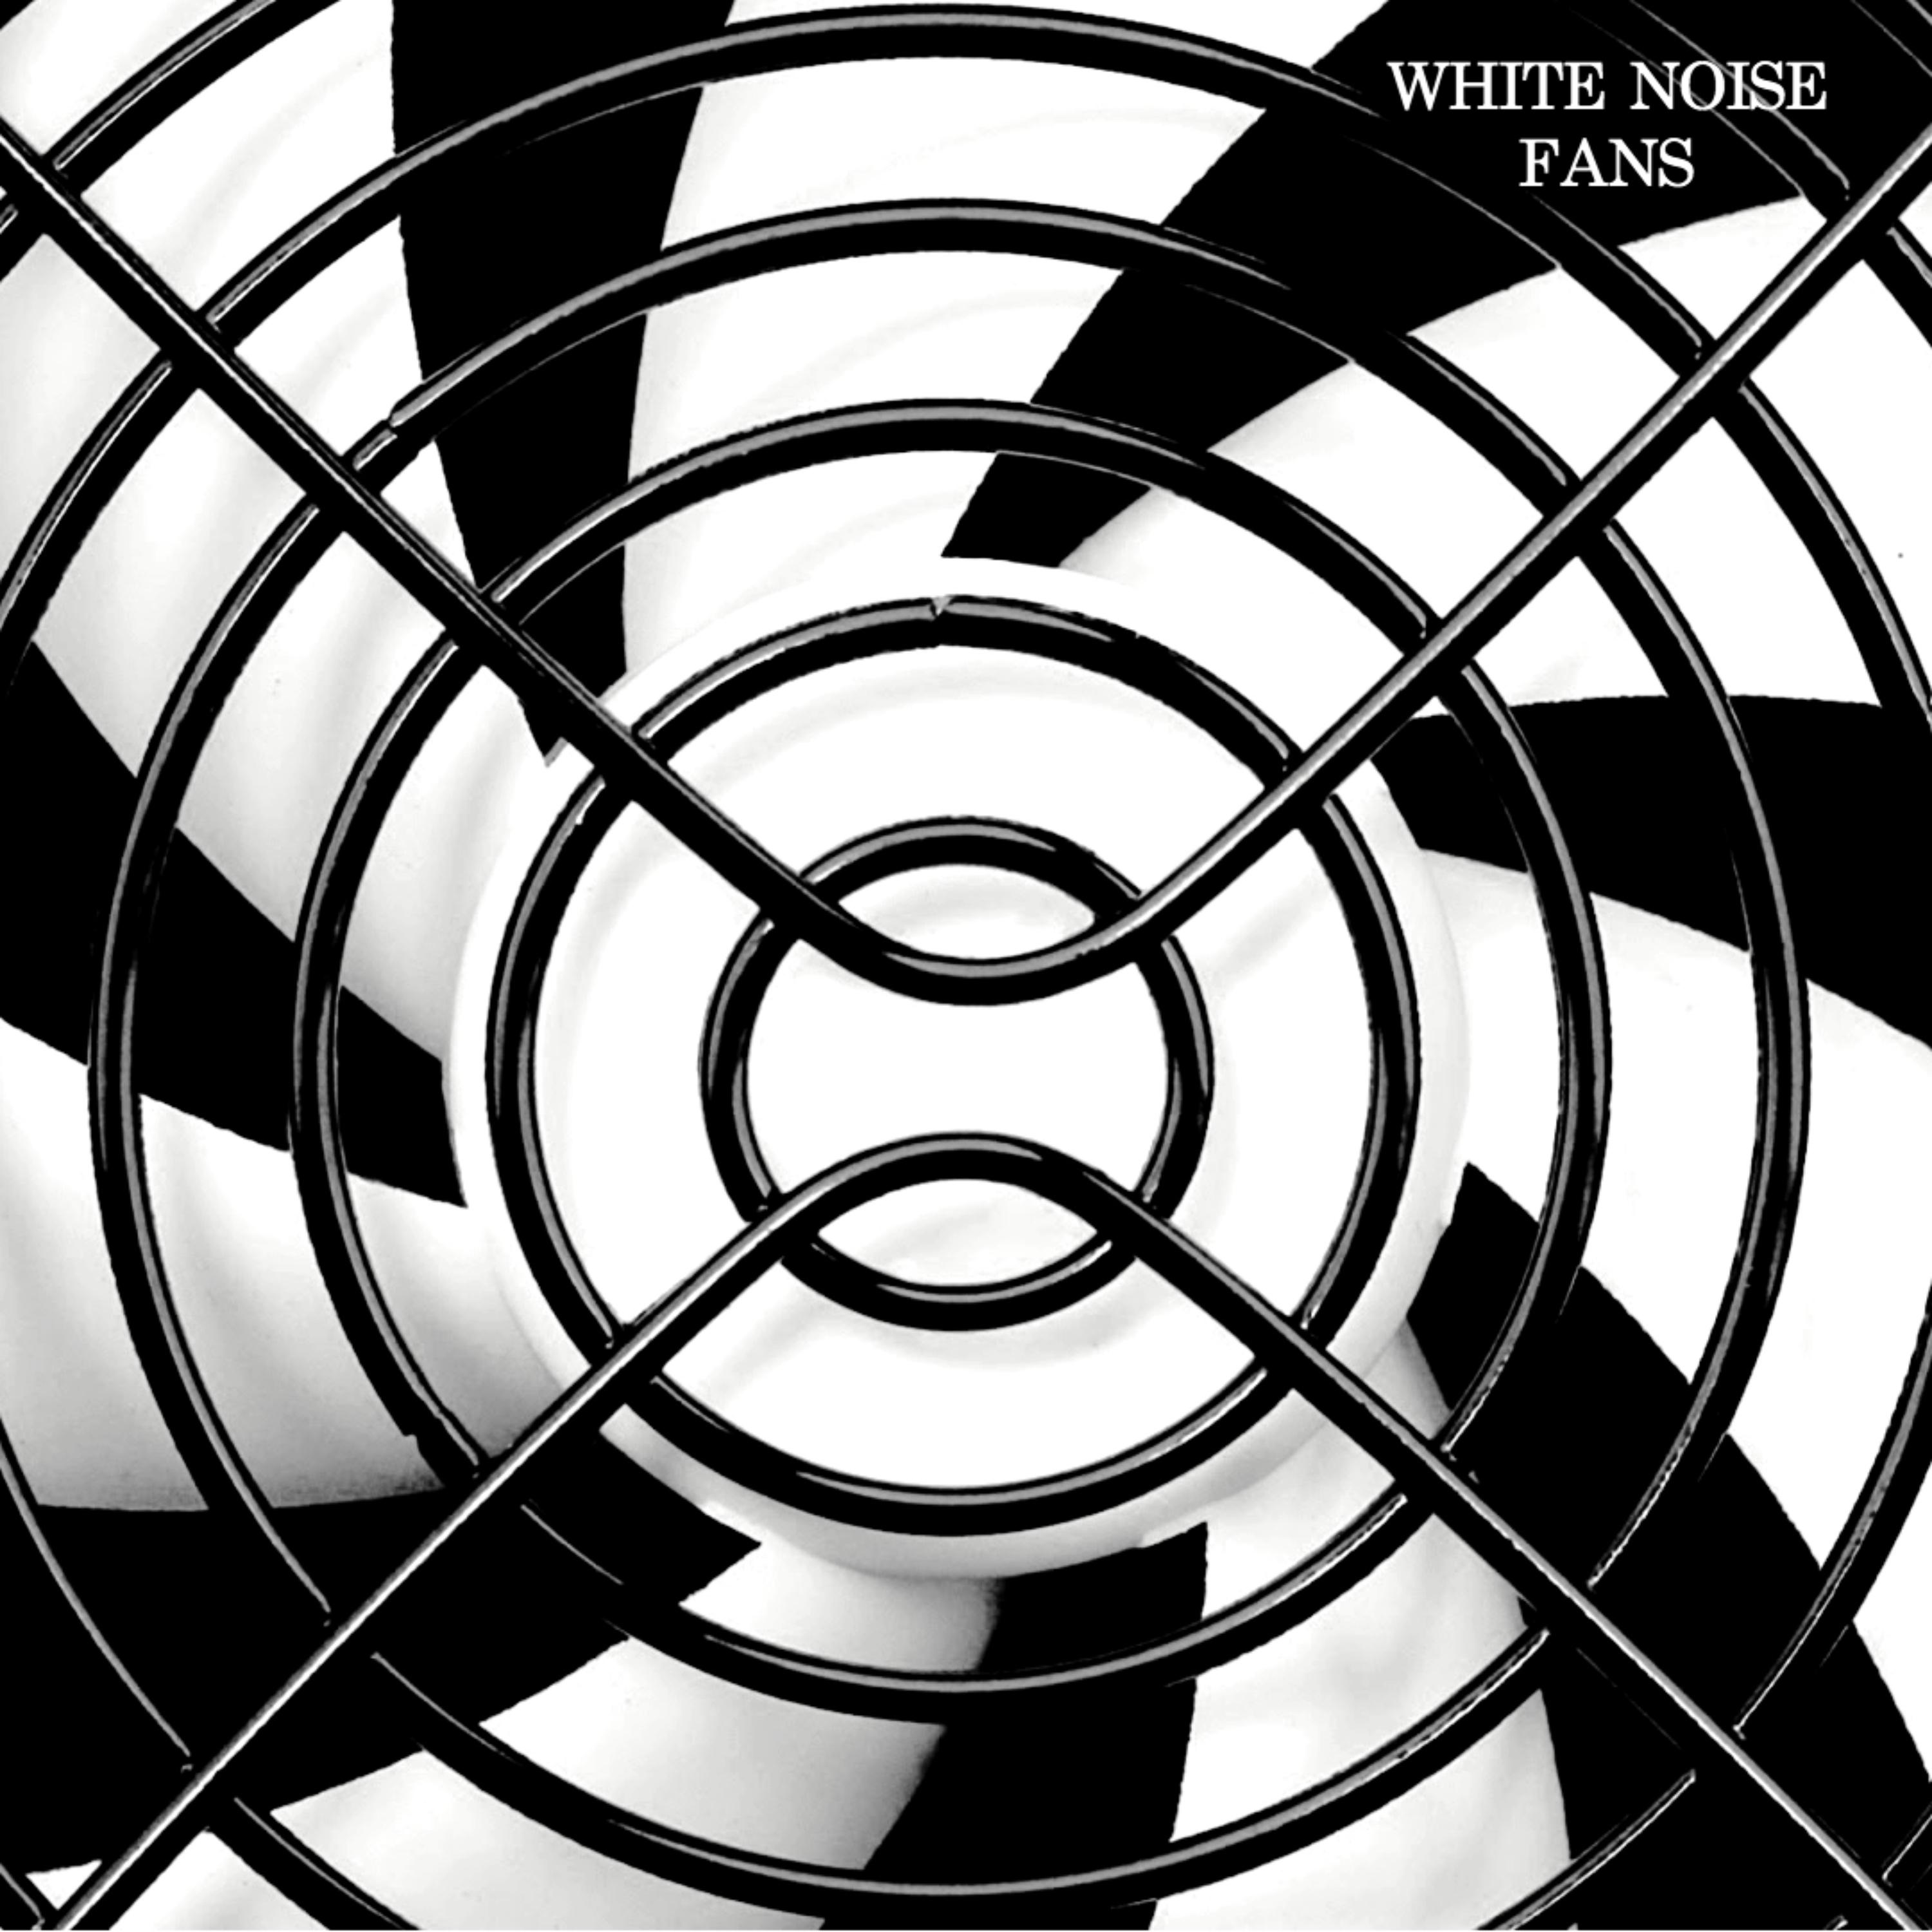 White Noise: Industrial Fan